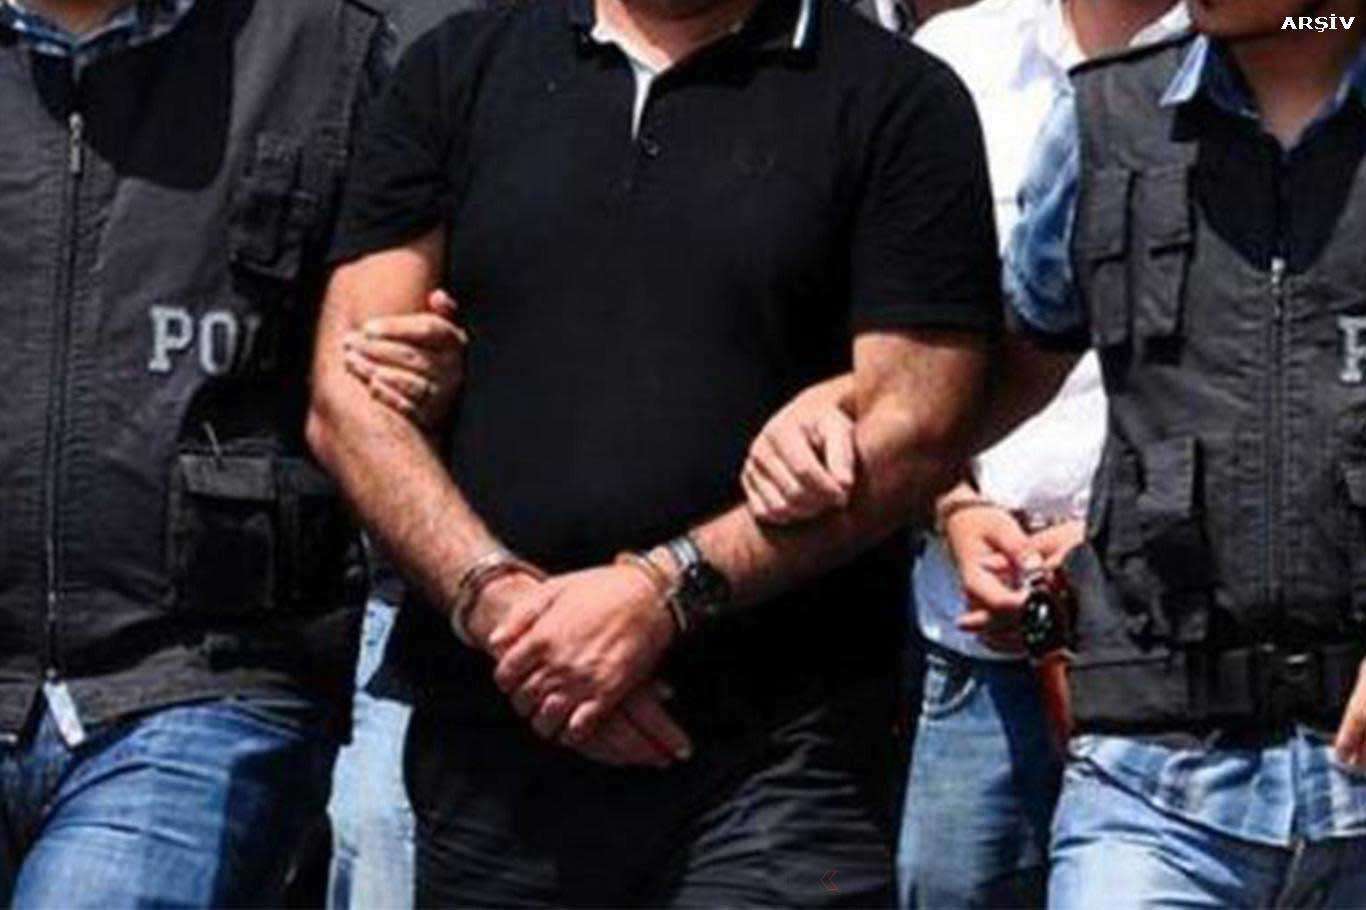 Gaziantep’te PKK operasyonu: 2 kişi tutuklandı